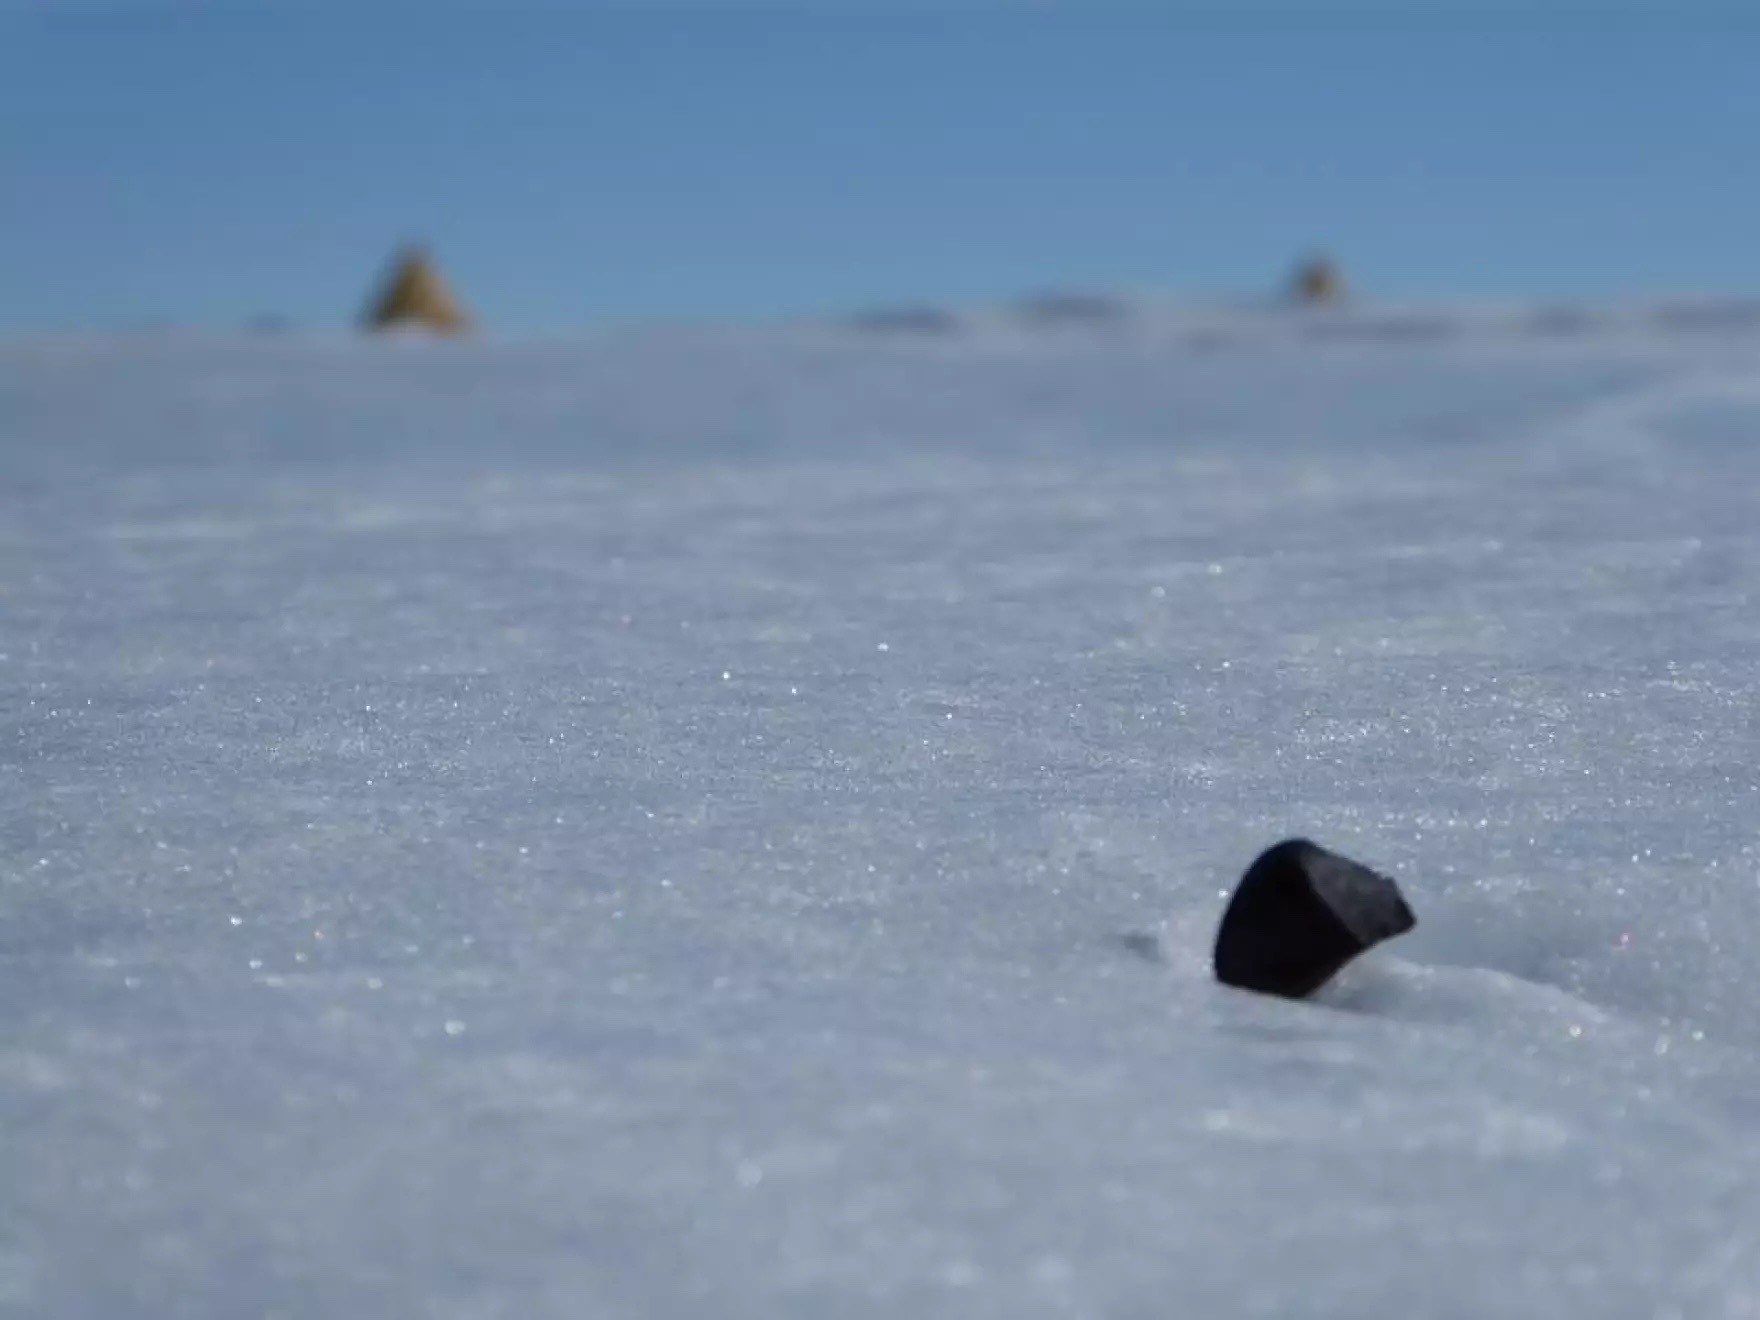 meteorite in snow